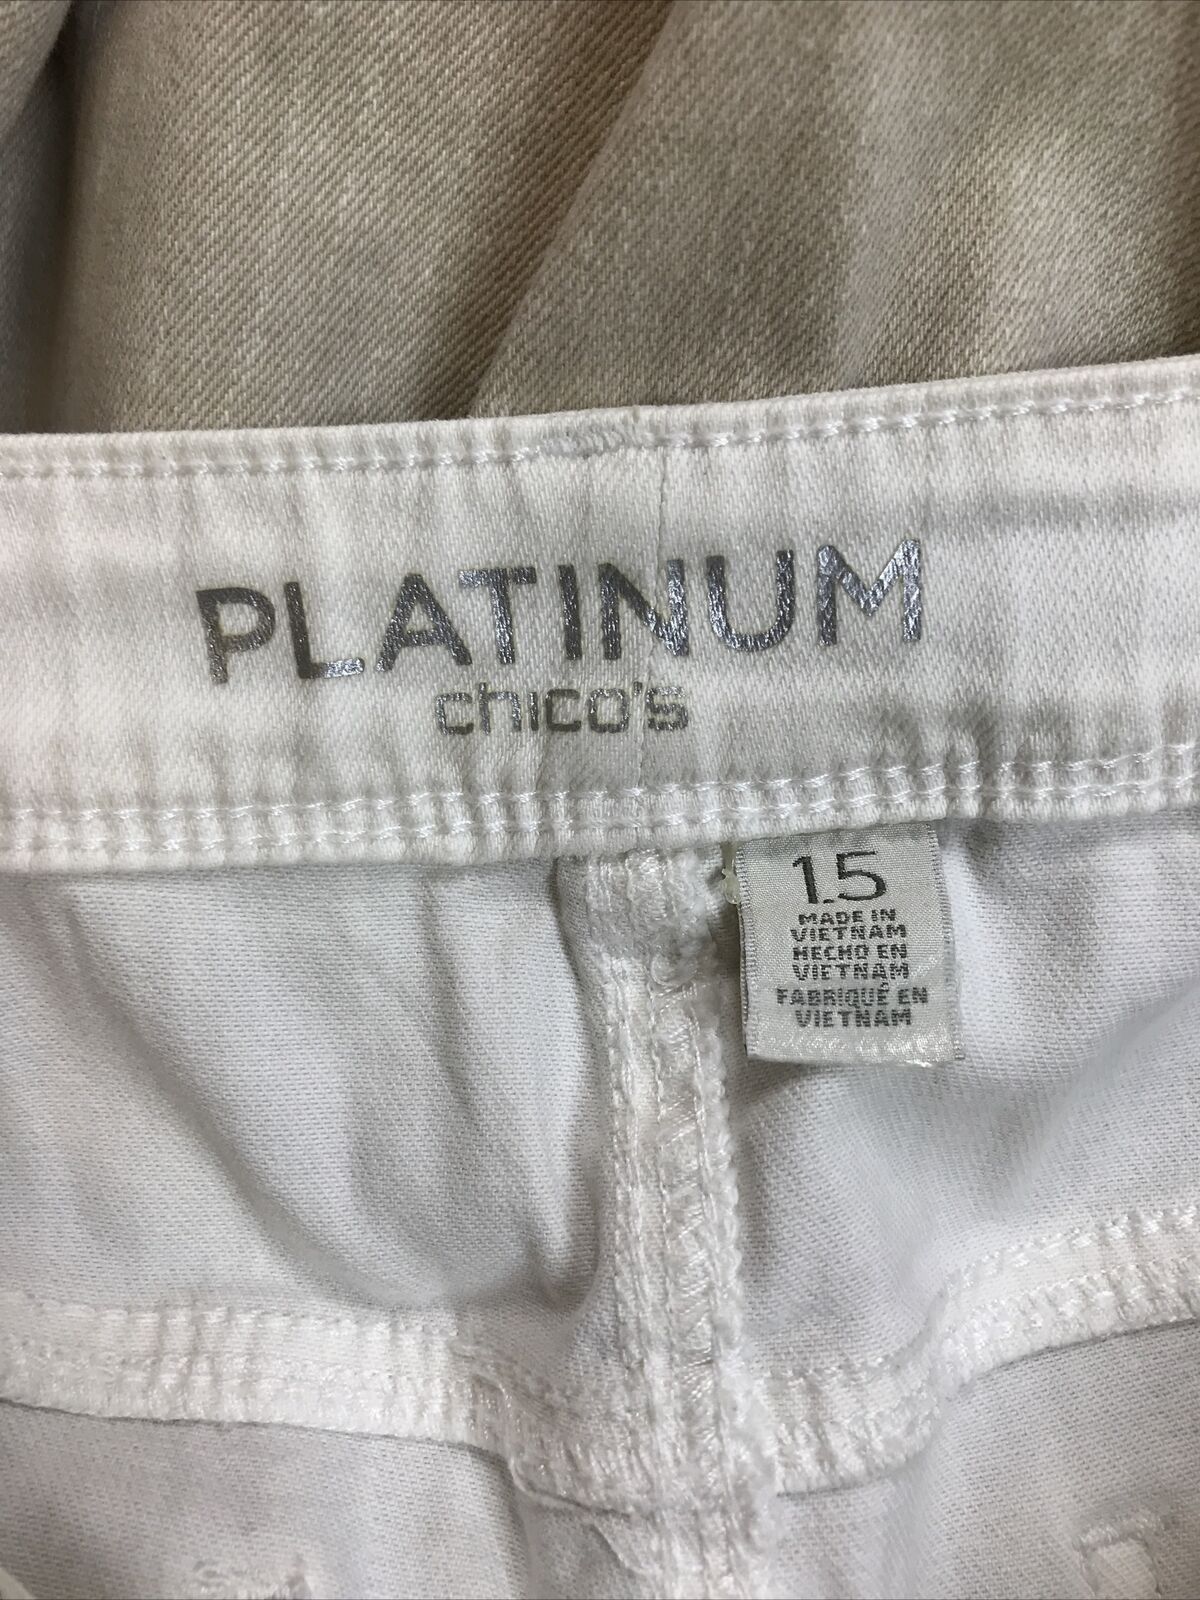 Chico's Platinum Women's Beige Slim Leg Denim Jeans - 1.5 (10)